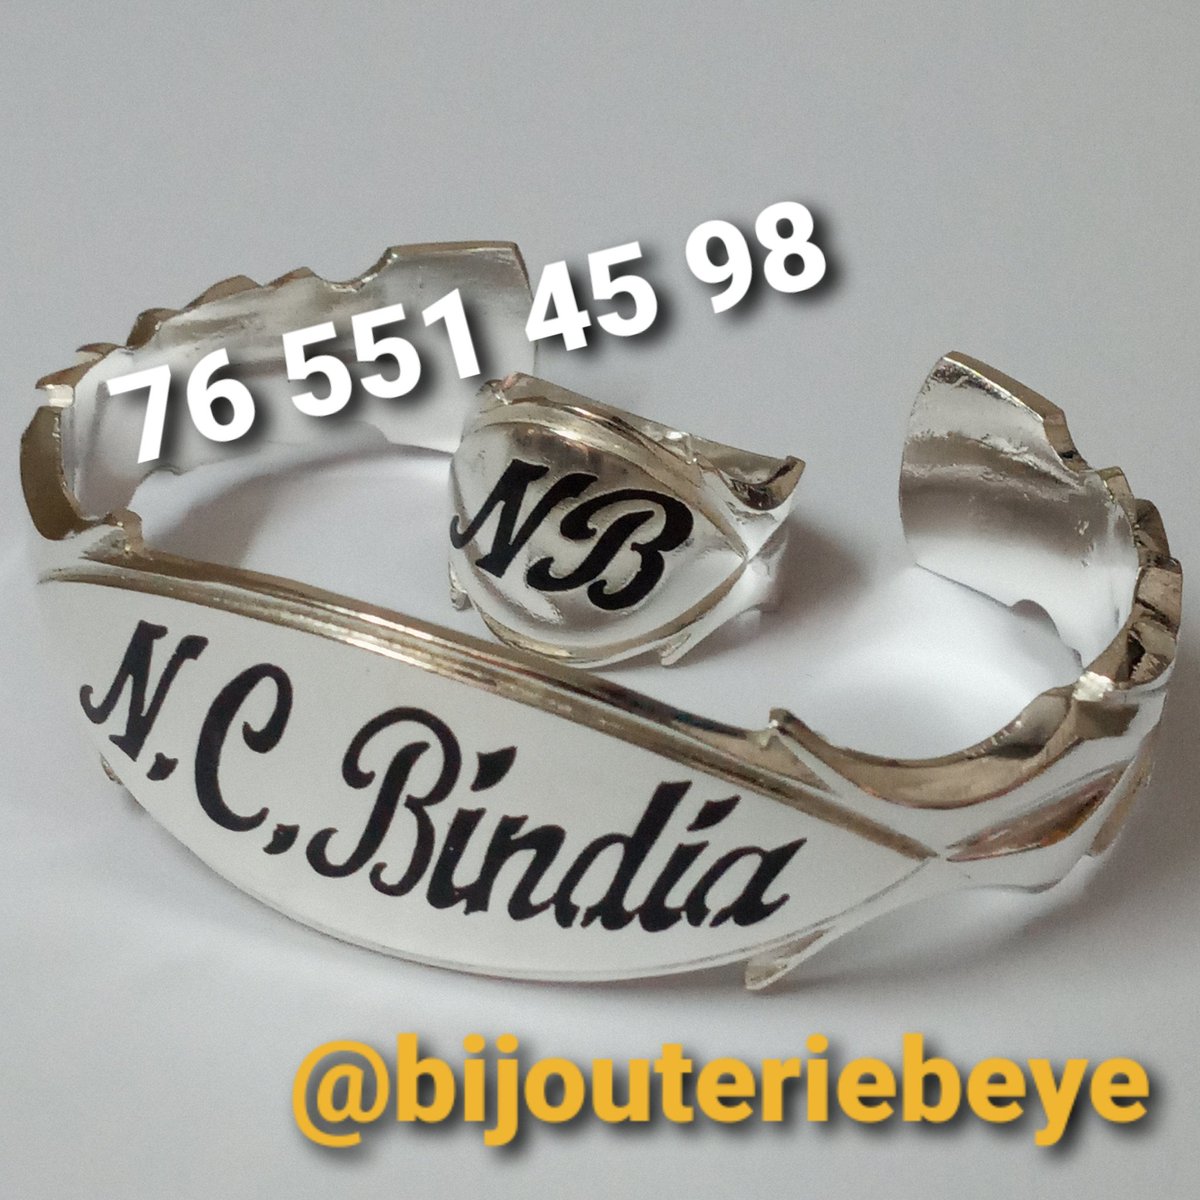 Bijouterie BEYE on Twitter: "Bracelet et bague en argent personnalisés en  fond noir. #bijoux #argent #senegal #dakar https://t.co/BEojrBvO76" /  Twitter